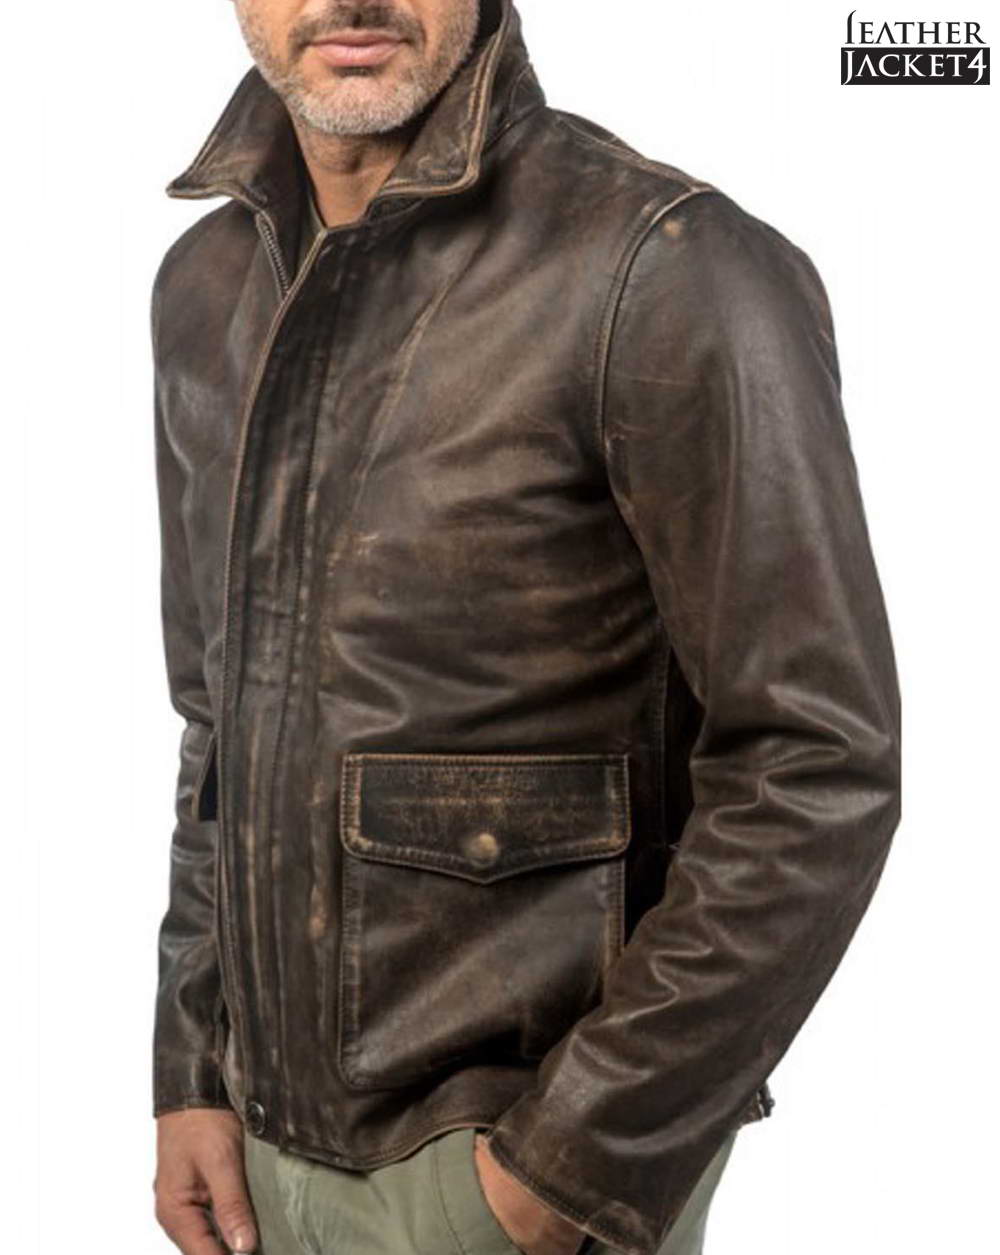 Buy Indiana Jones Leather Jacket